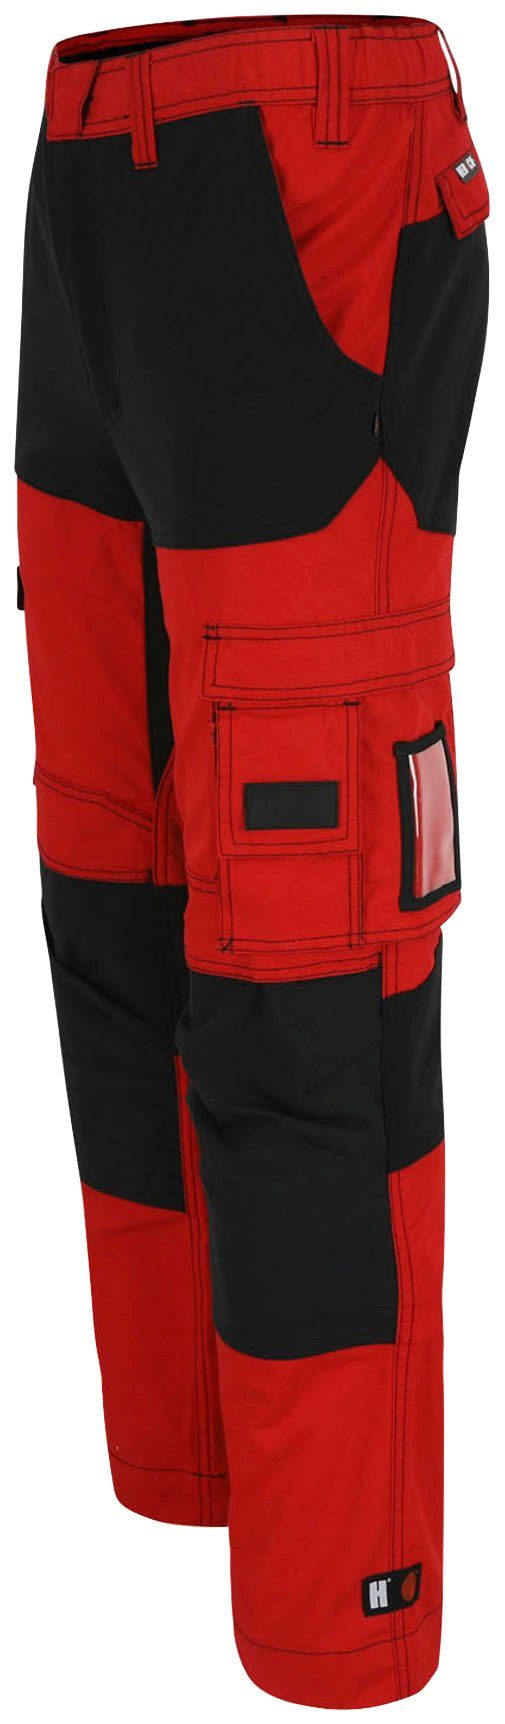 Hector Hoses verdeckter Knopf, verstärkte rot/schwarz Arbeitshose 4-Wege-Stretch, Herock Knietaschen Multi-Pocket,